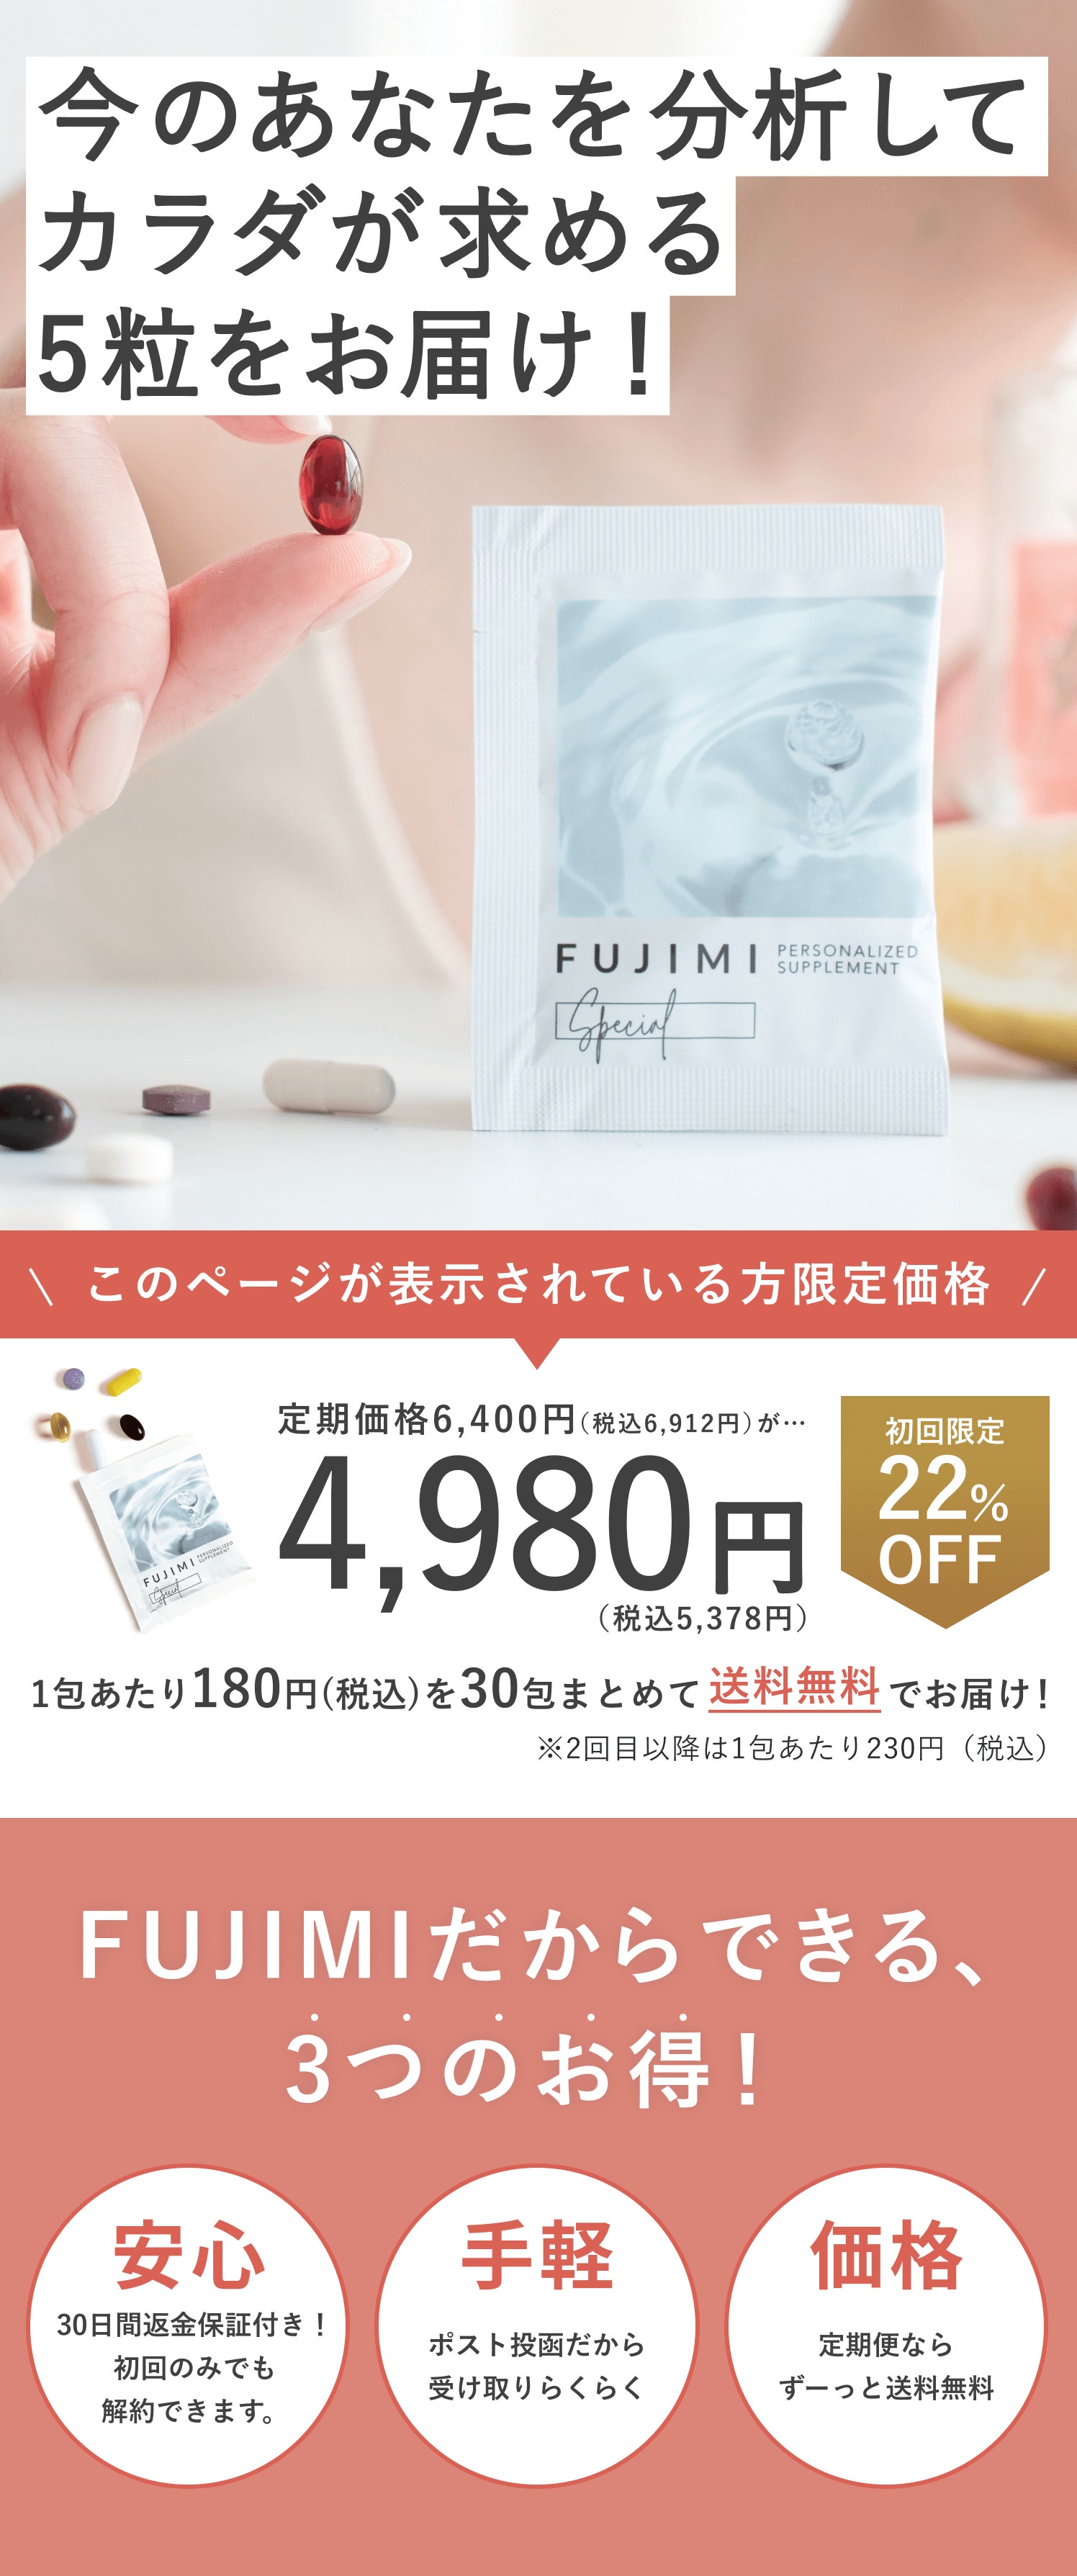 美容分析からつくる『FUJIMI パーソナライズサプリメント』 | FUJIMI ...